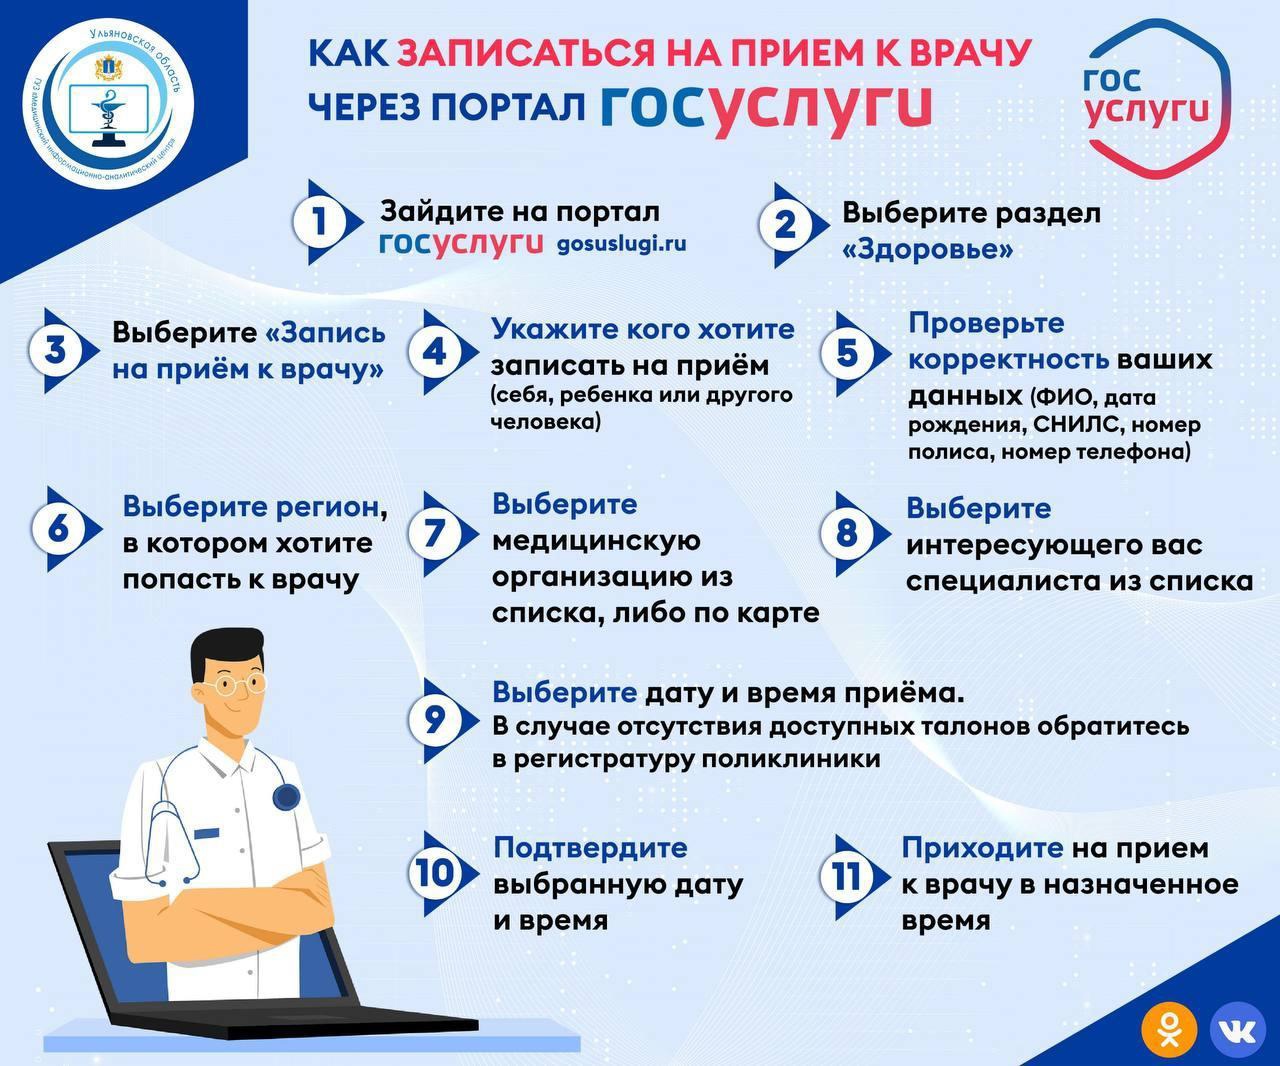 Ульяновцы могут записаться на приём к врачу  через «Госуслуги».